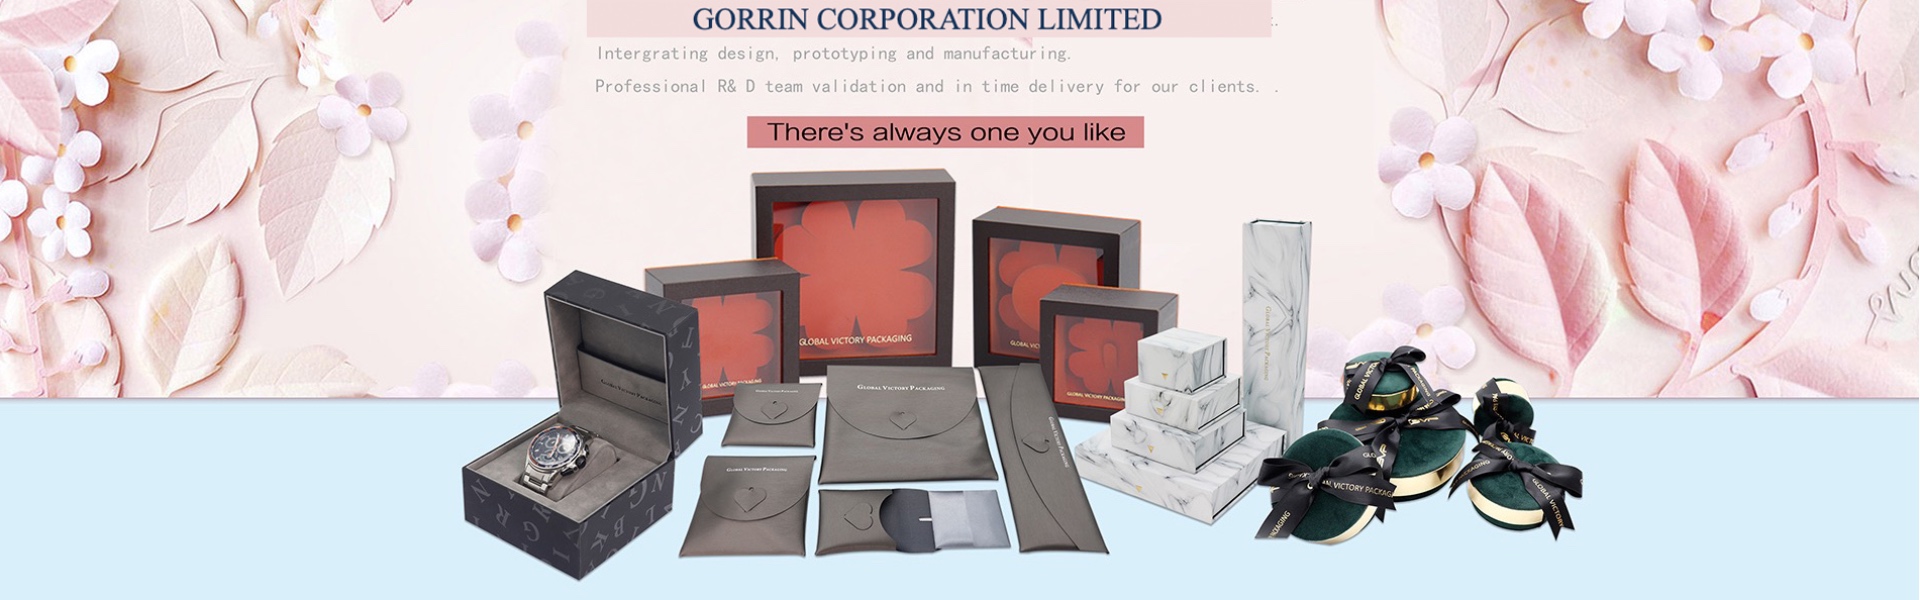 กล่องกระดาษเครื่องประดับกล่องเครื่องประดับ,Gorrin corporation limited